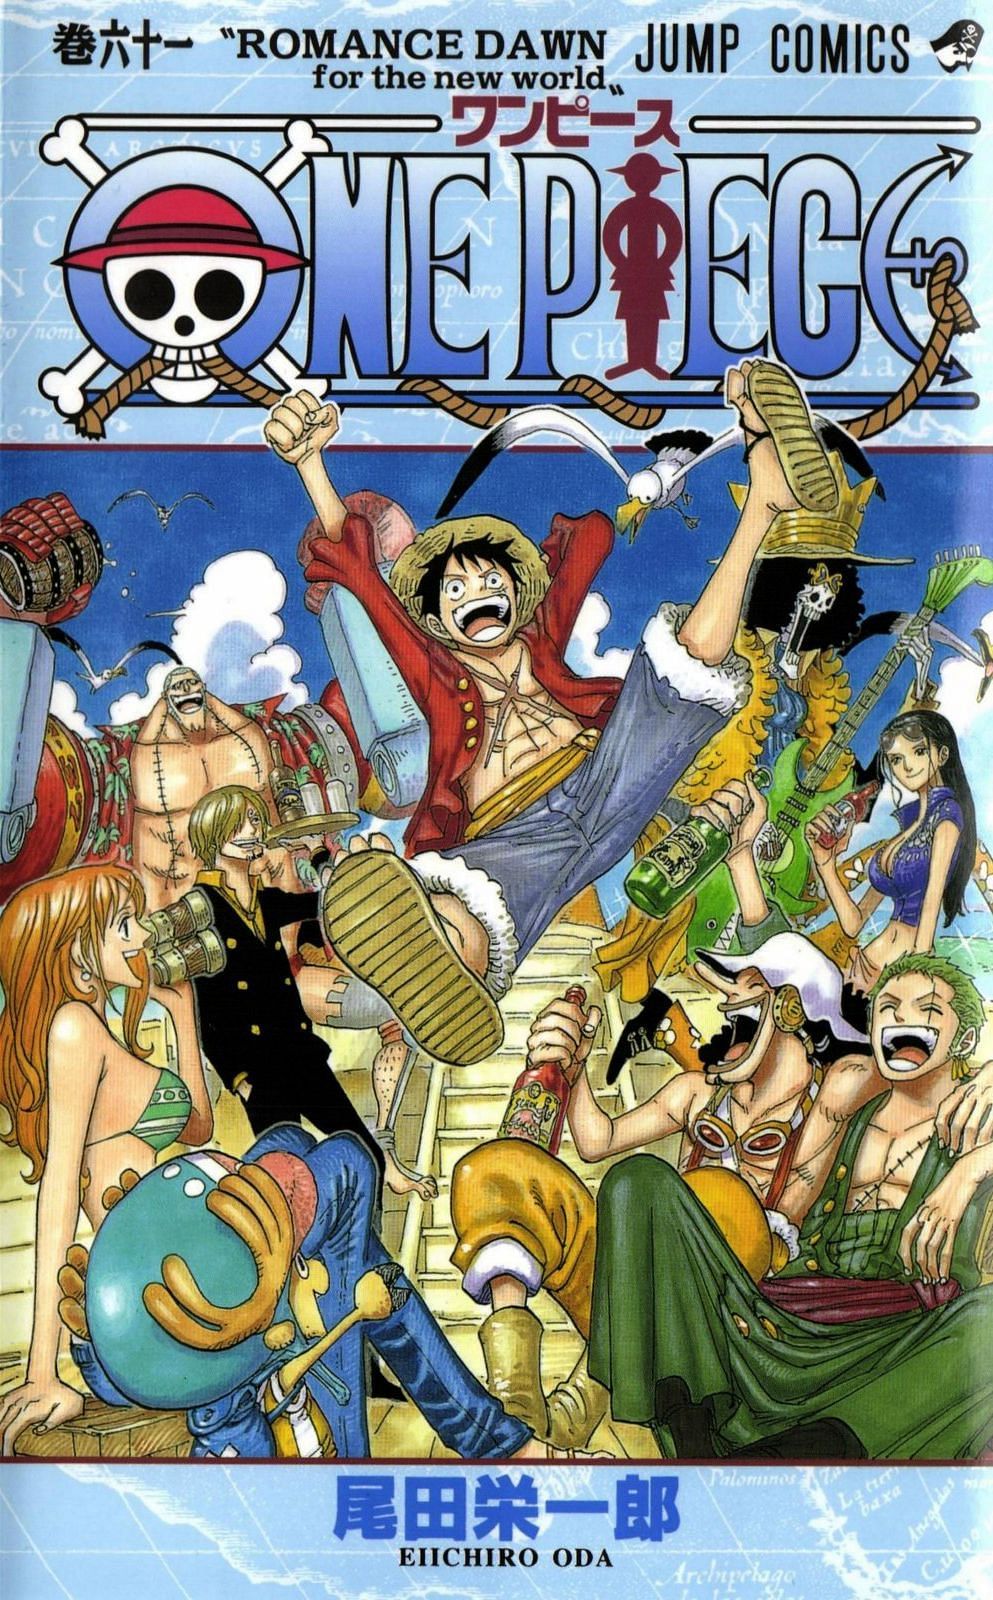 The cover art for One Piece Volume 61 (Image via Shueisha)